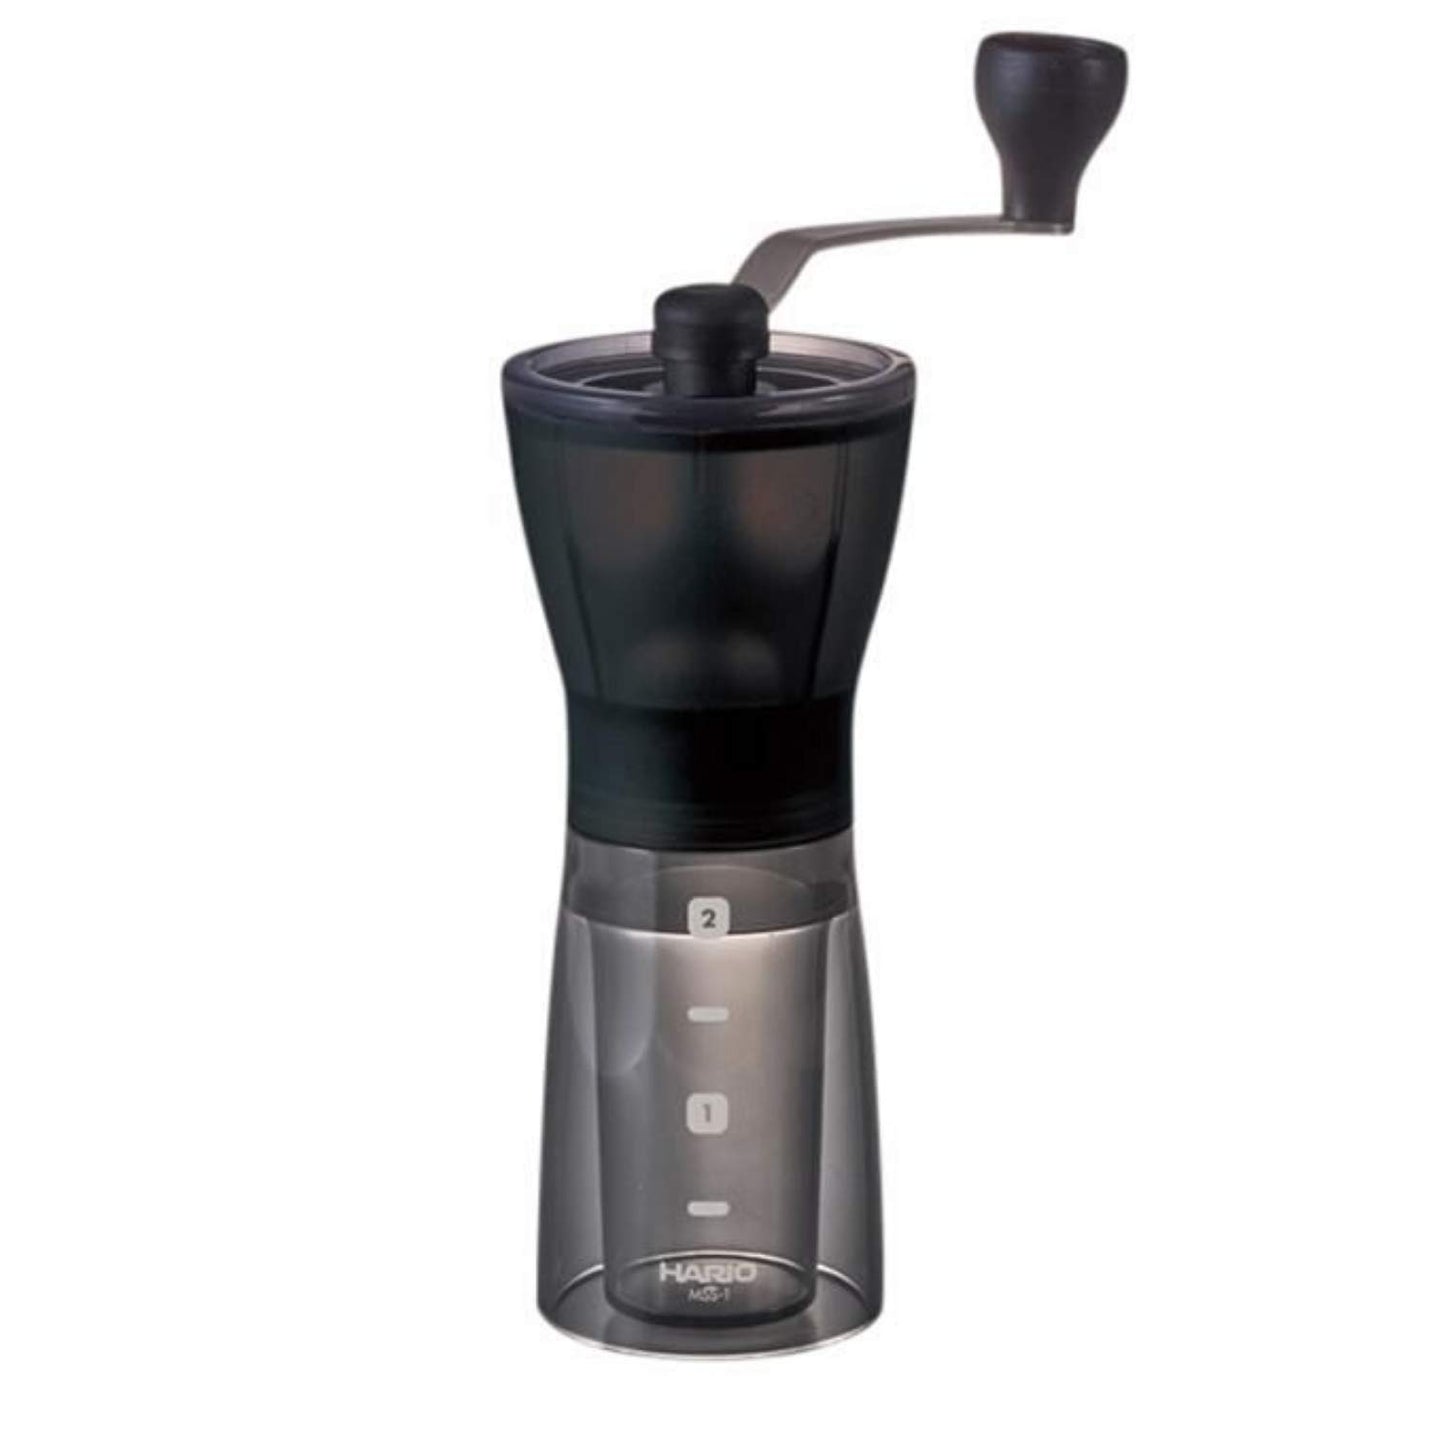 Hario Mini Mill - Manual coffee grinder